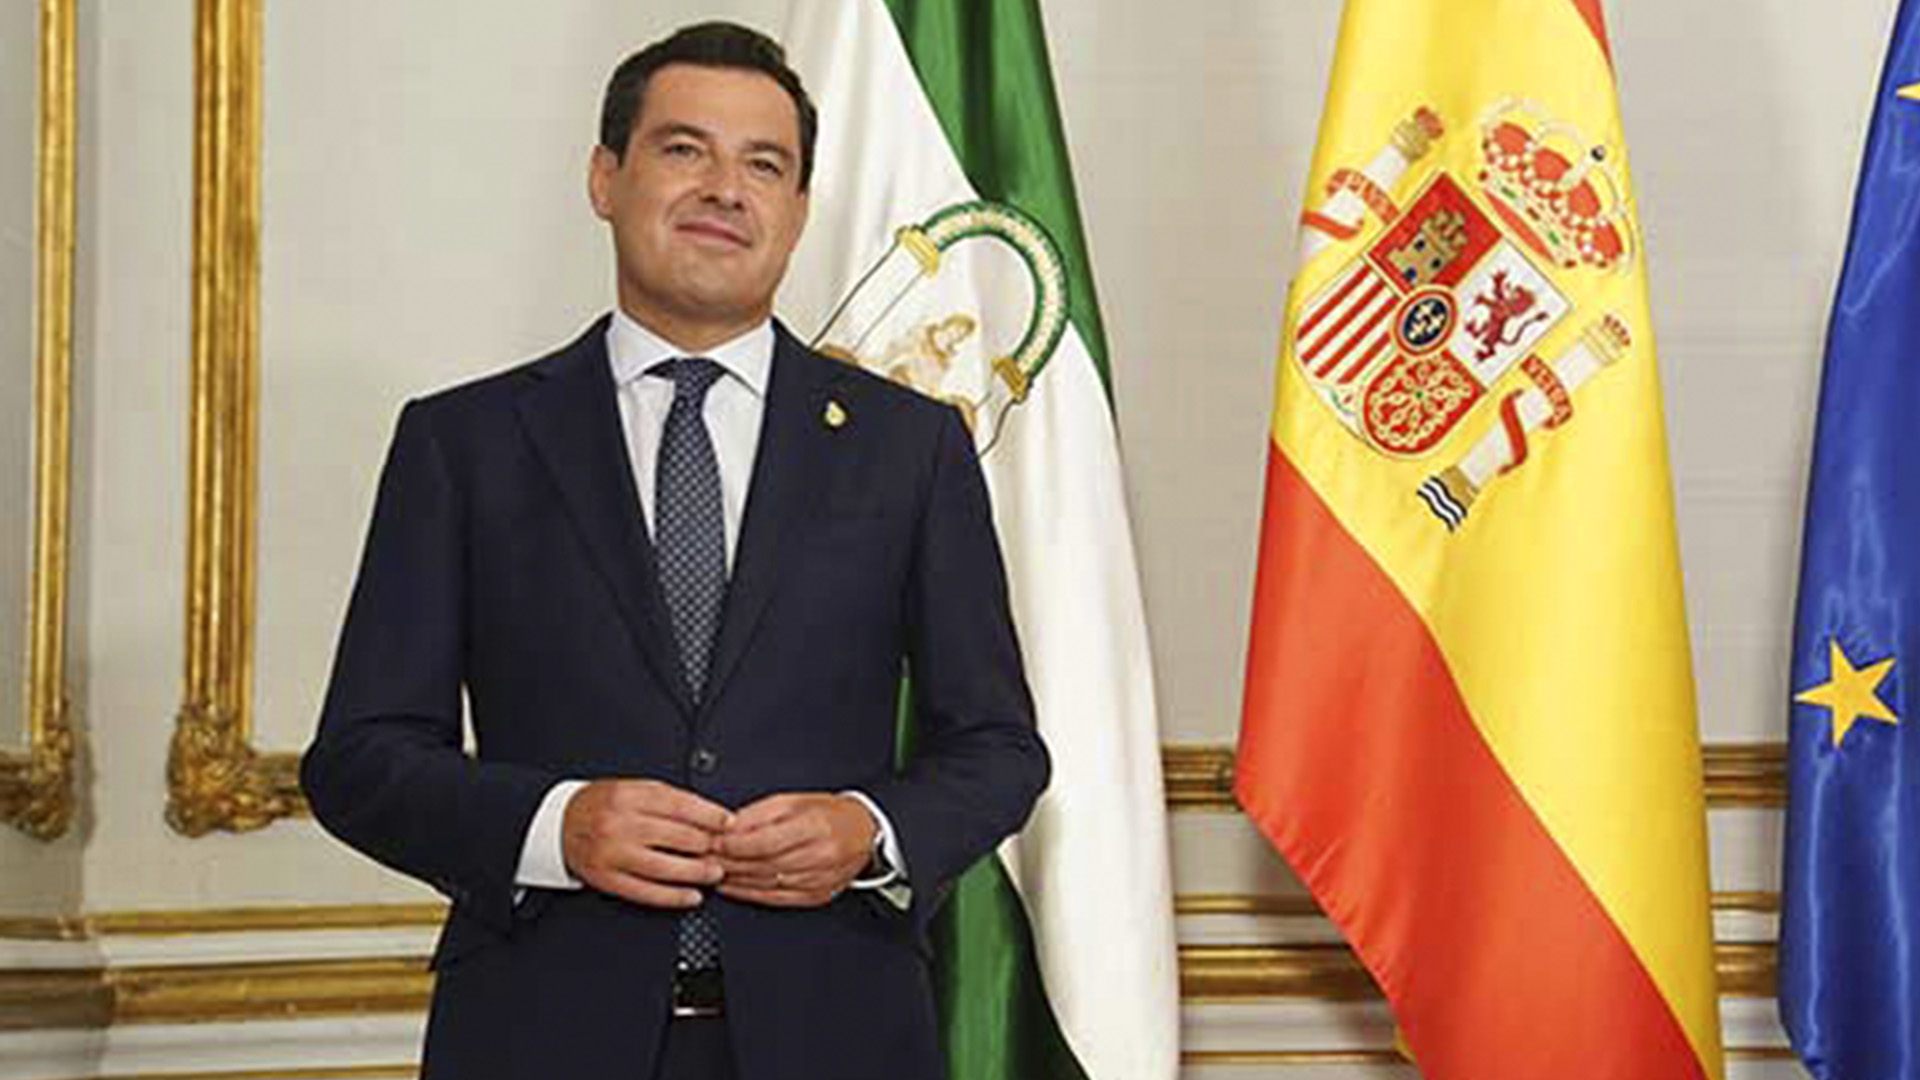 El Presidente de la Junta de Andalucía anuncia la vuelta a la normalidad